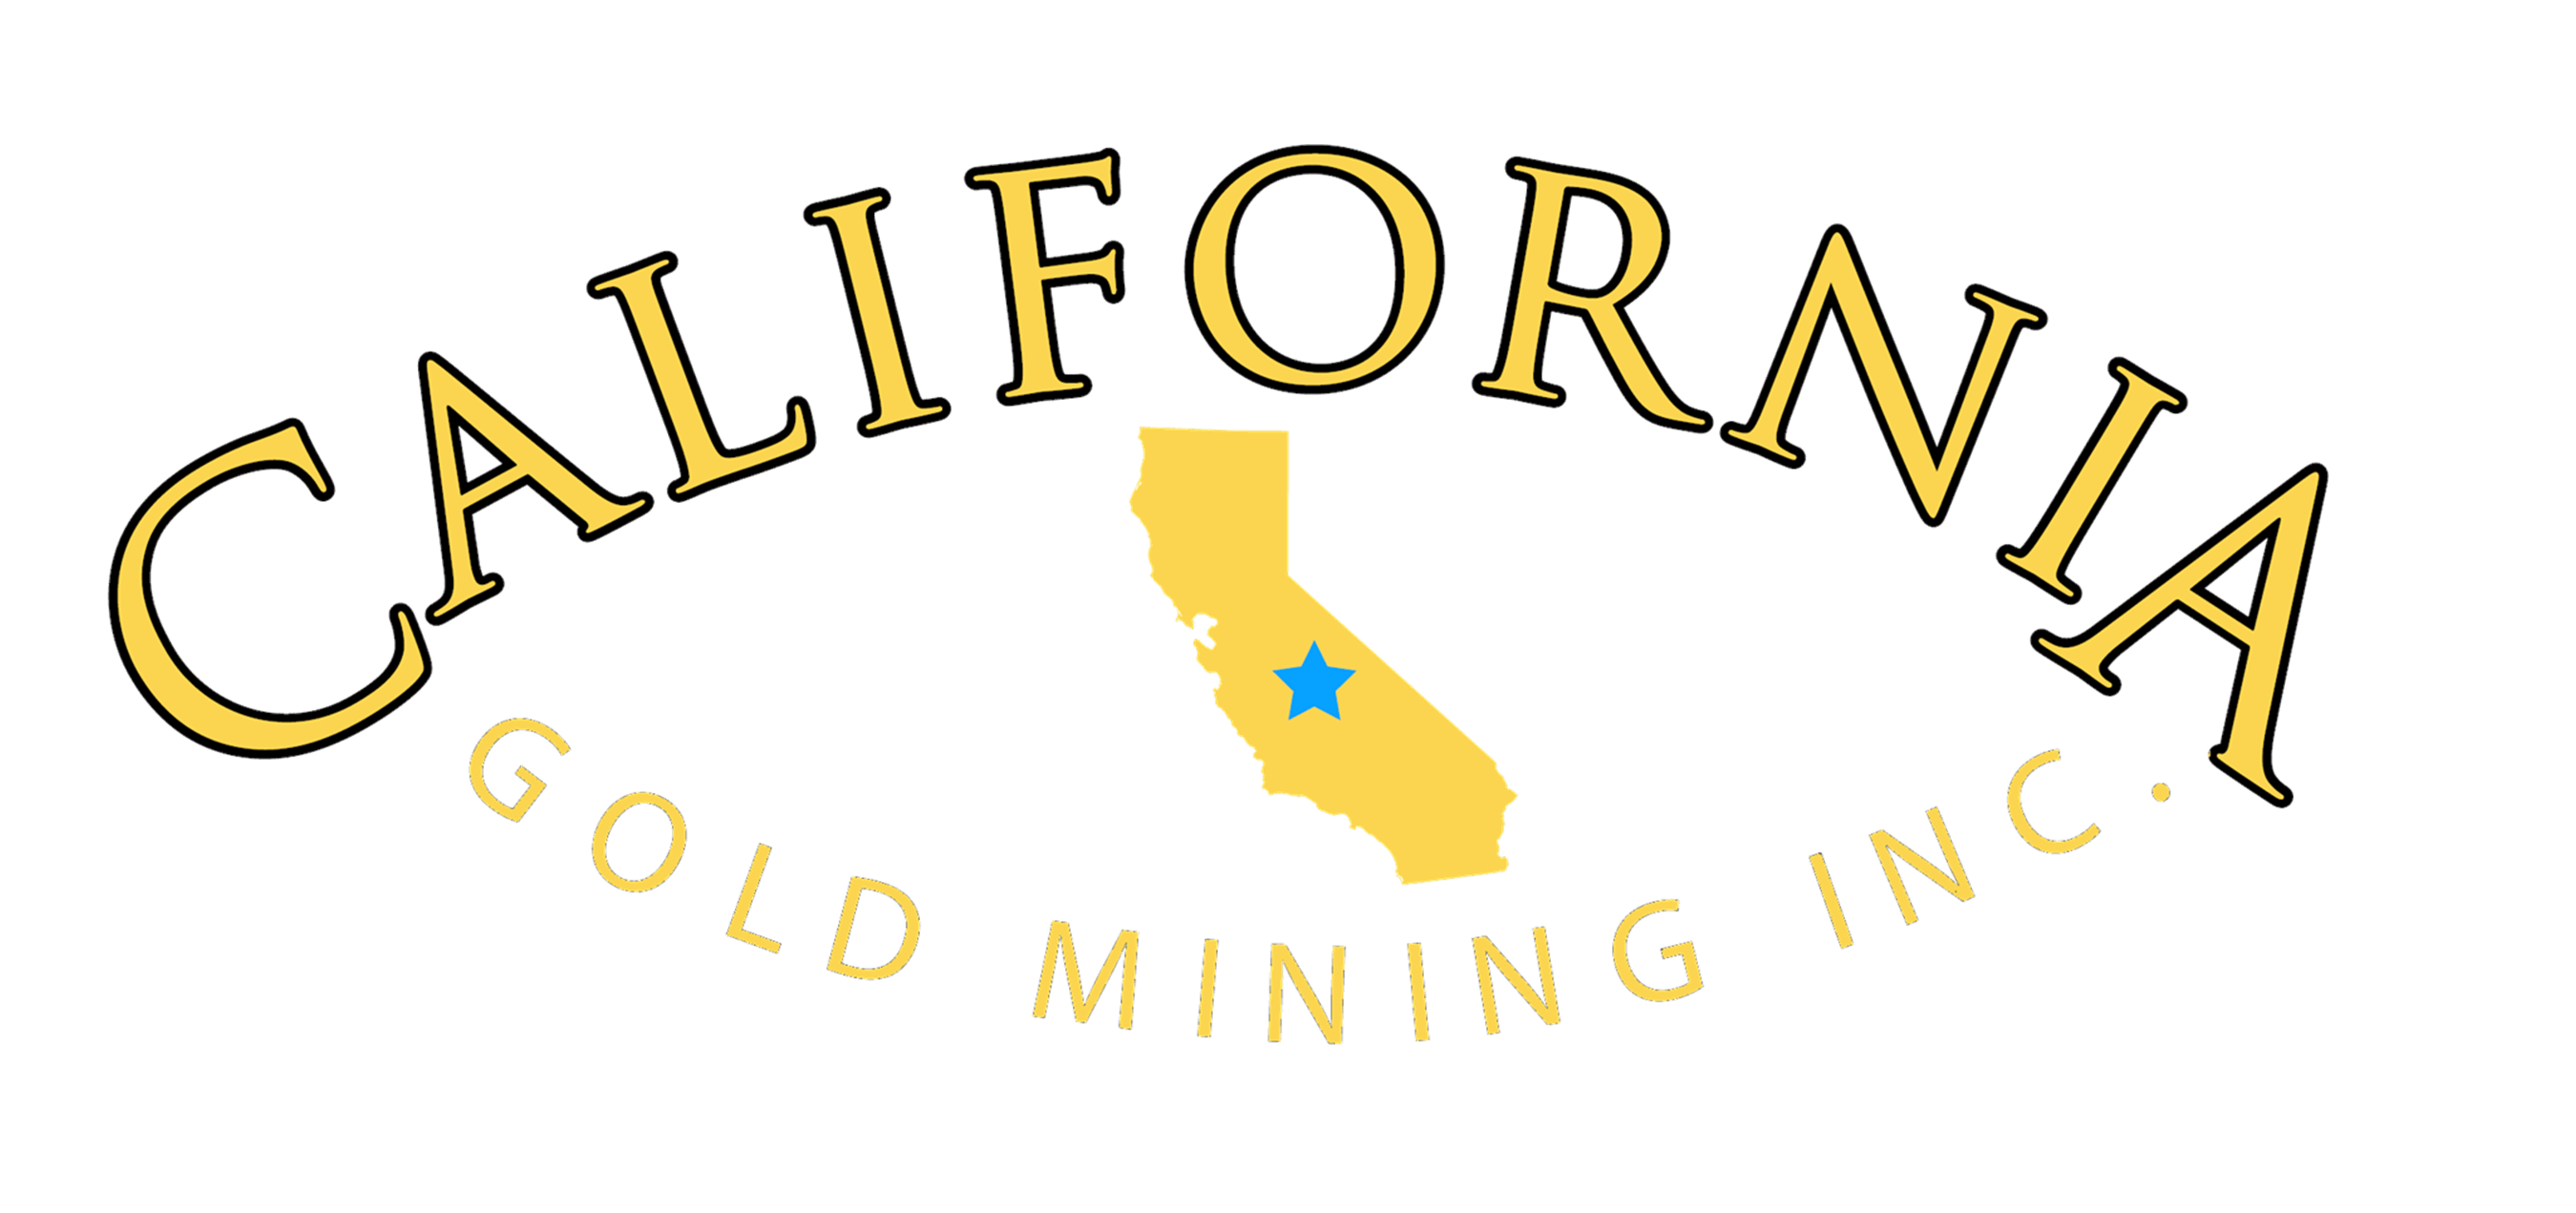 Gold Mining Logo - California Gold Mining Inc